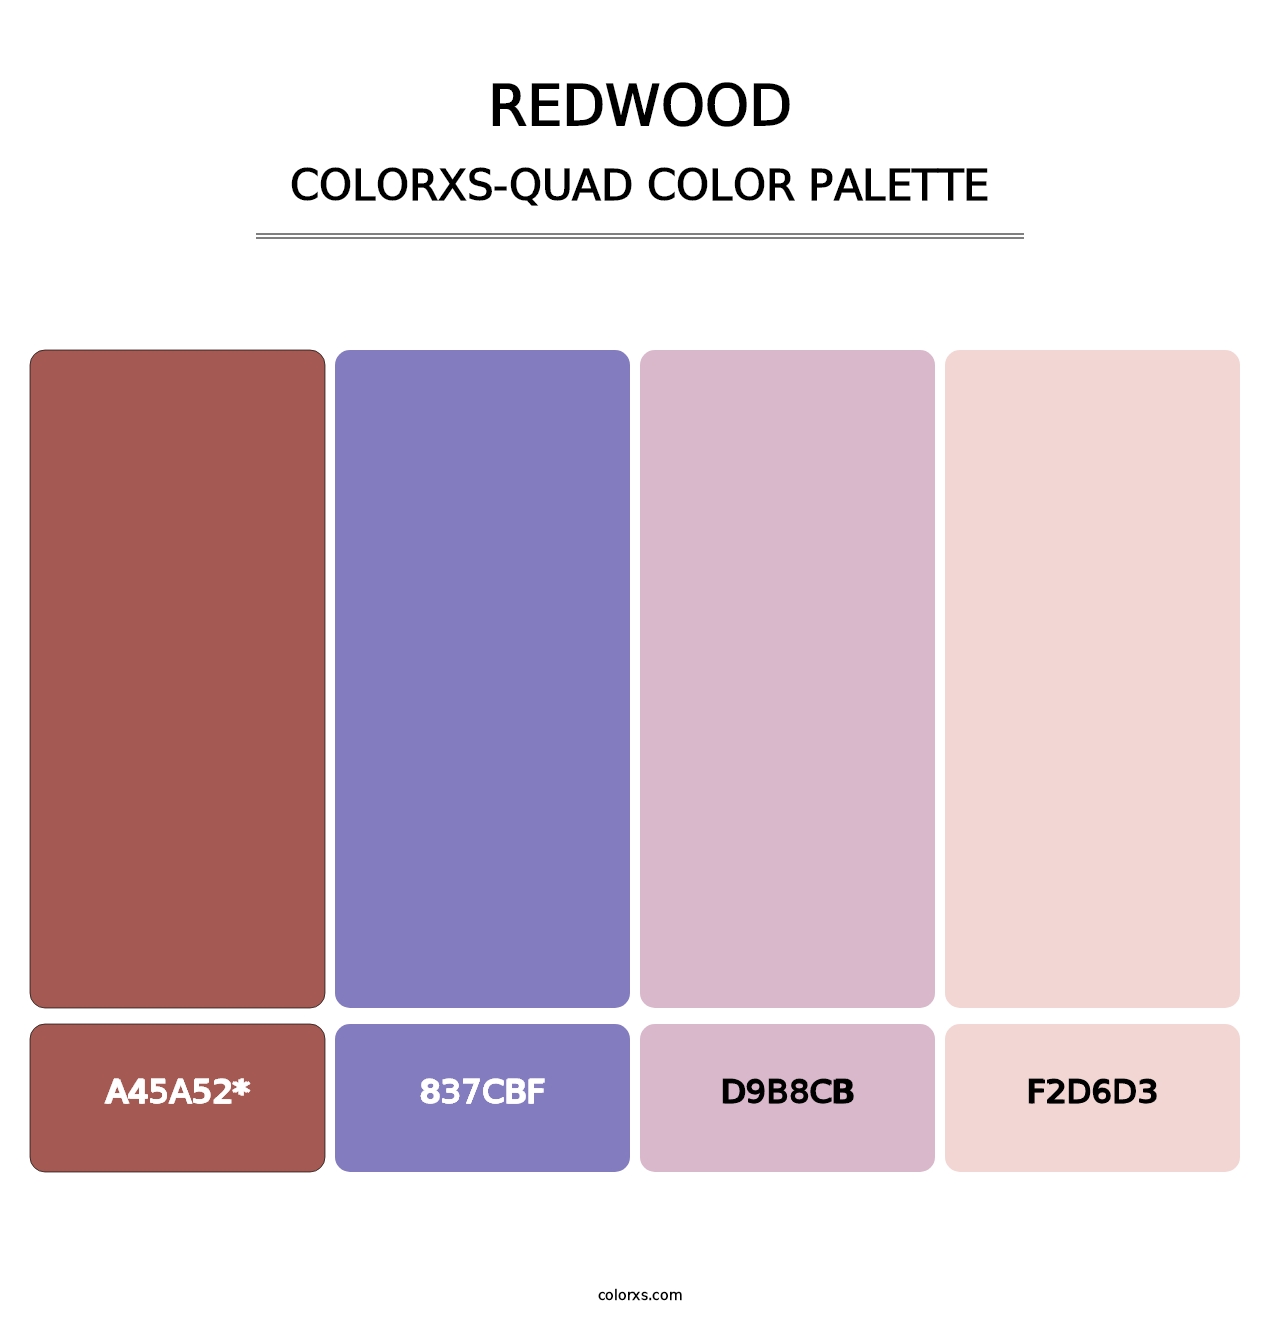 Redwood - Colorxs Quad Palette